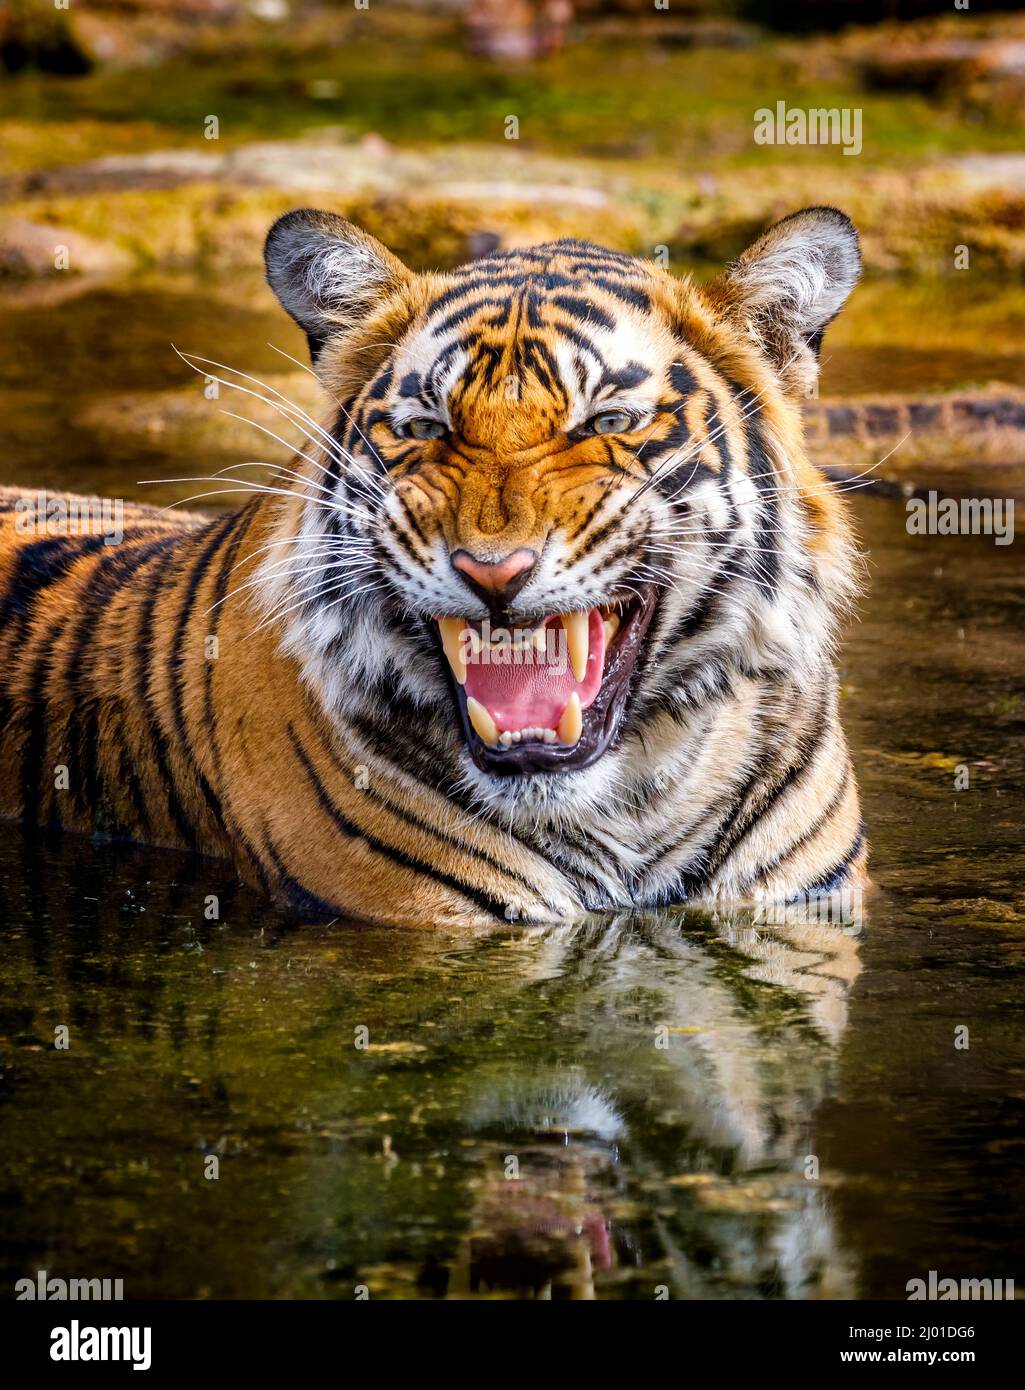 Weibliche Bengaltiger (Panthera tigris) (Tigerin) schnarrt, während sie sich ausruht und in einem Wasserloch, dem Ranthambore National Park, Rajasthan, Nordindien, abkühlt Stockfoto